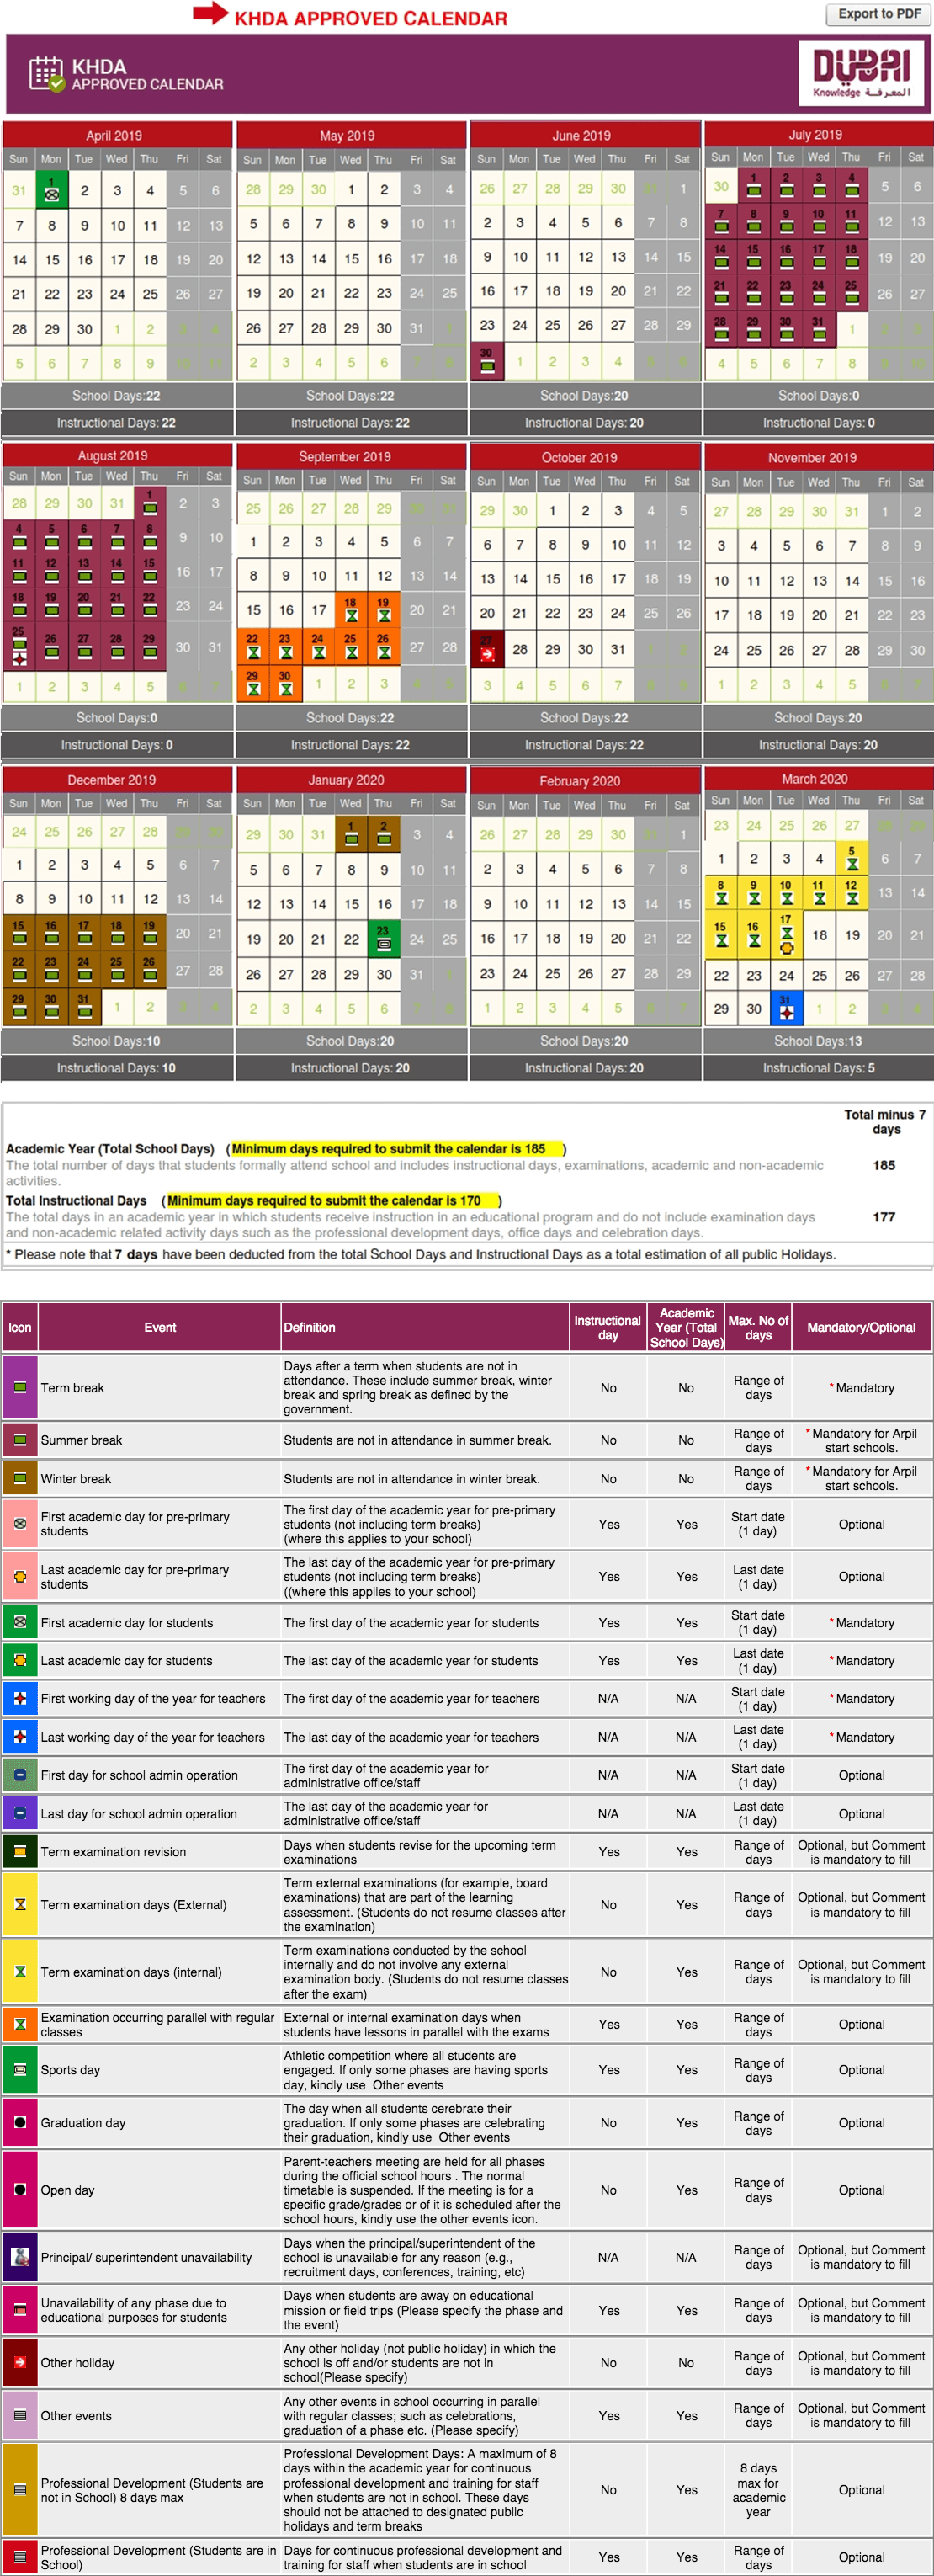 oberlin academic calendar 2018-2019